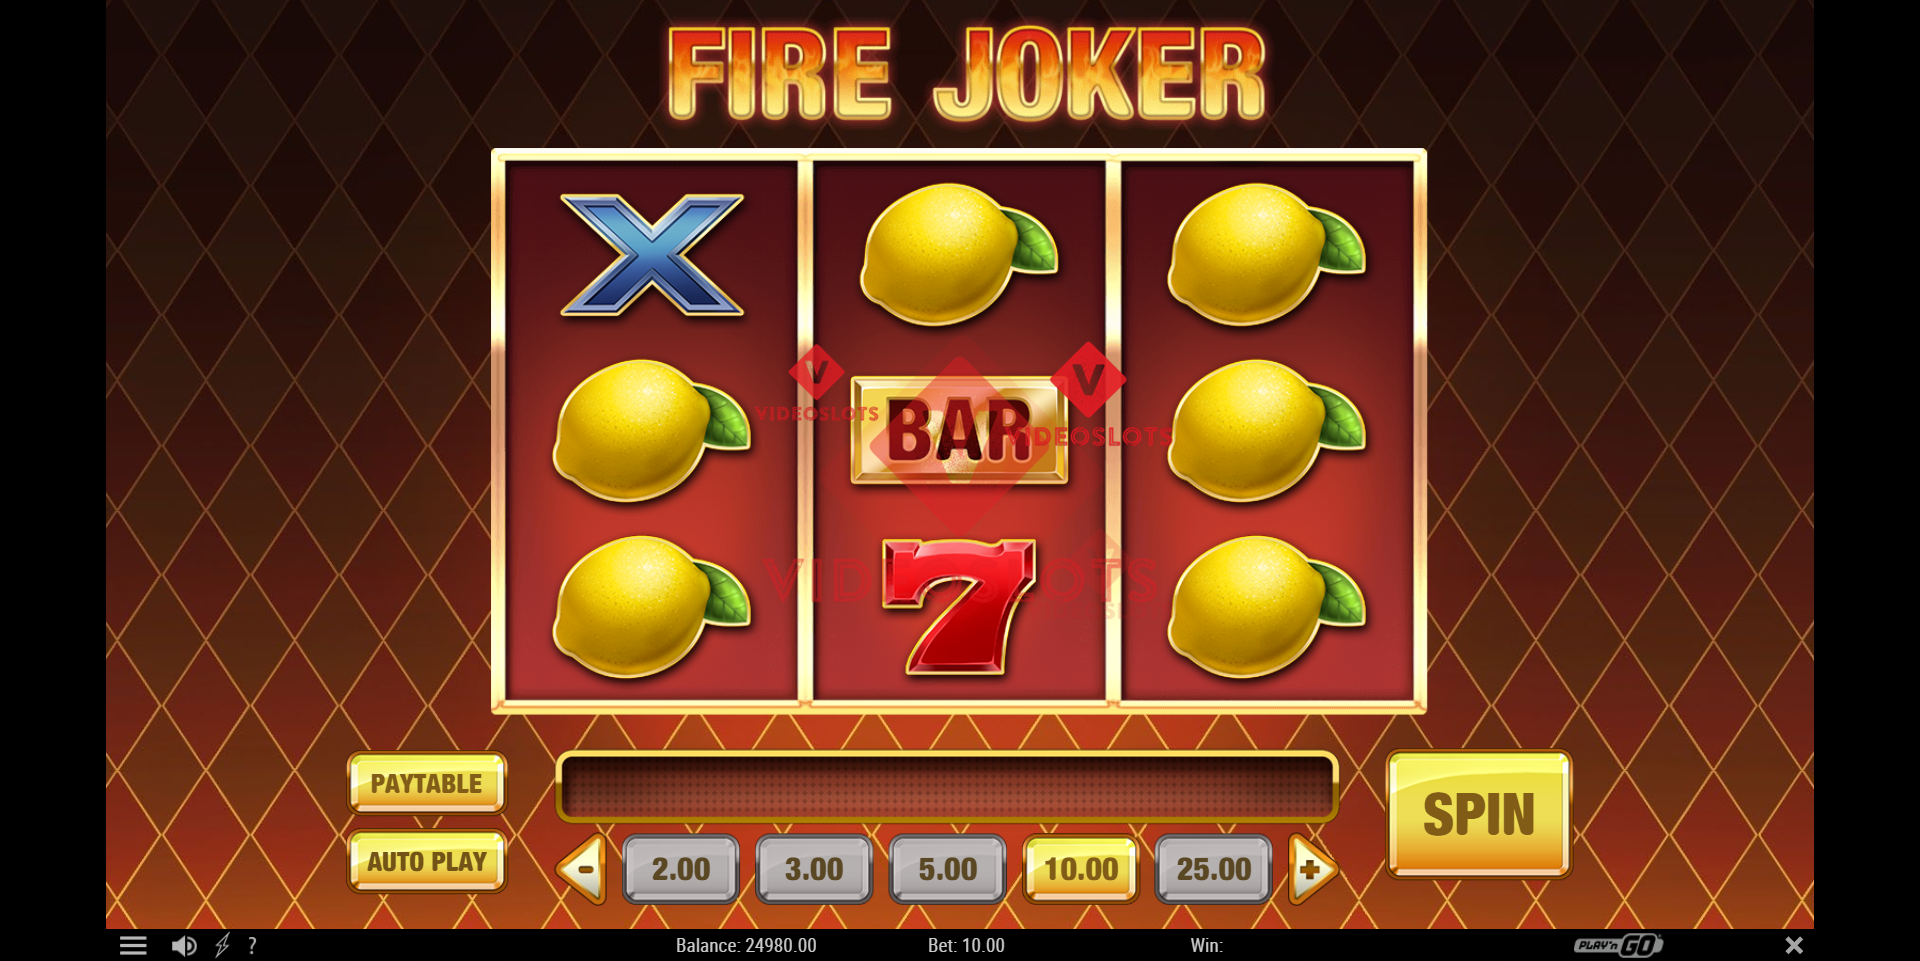 Base Game for Fire Joker slot from Play'n Go